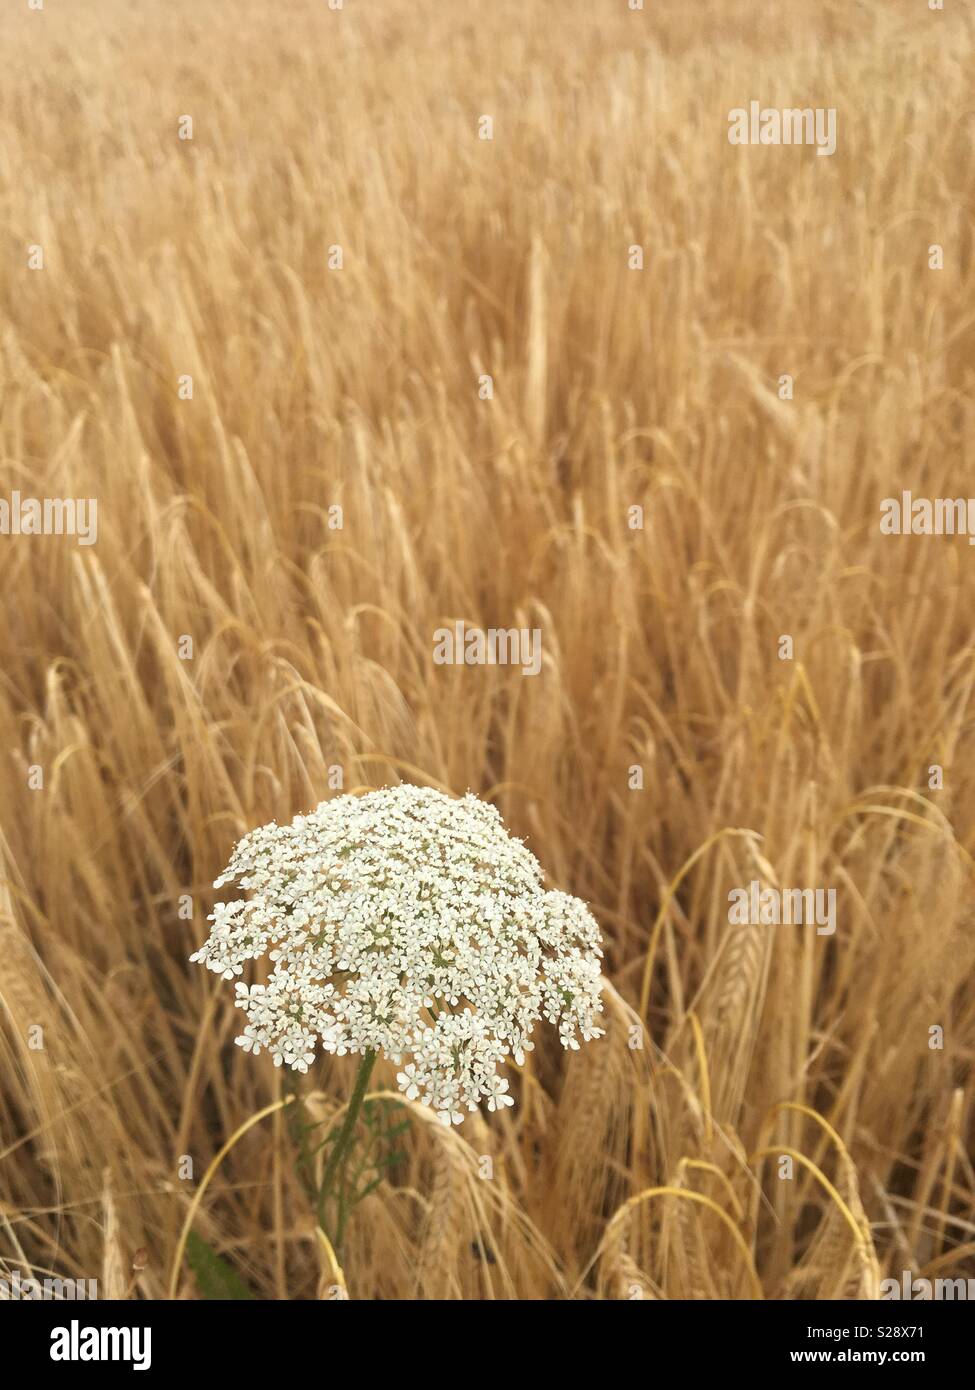 Goldene Weizen Feld im Sommer und weißen scharfkraut oder Kuh - pastinake (Heracleum Sphopdylium) im Fokus im Vordergrund. Portrait eines wilden Blume in Norfolk, Großbritannien. Stockfoto